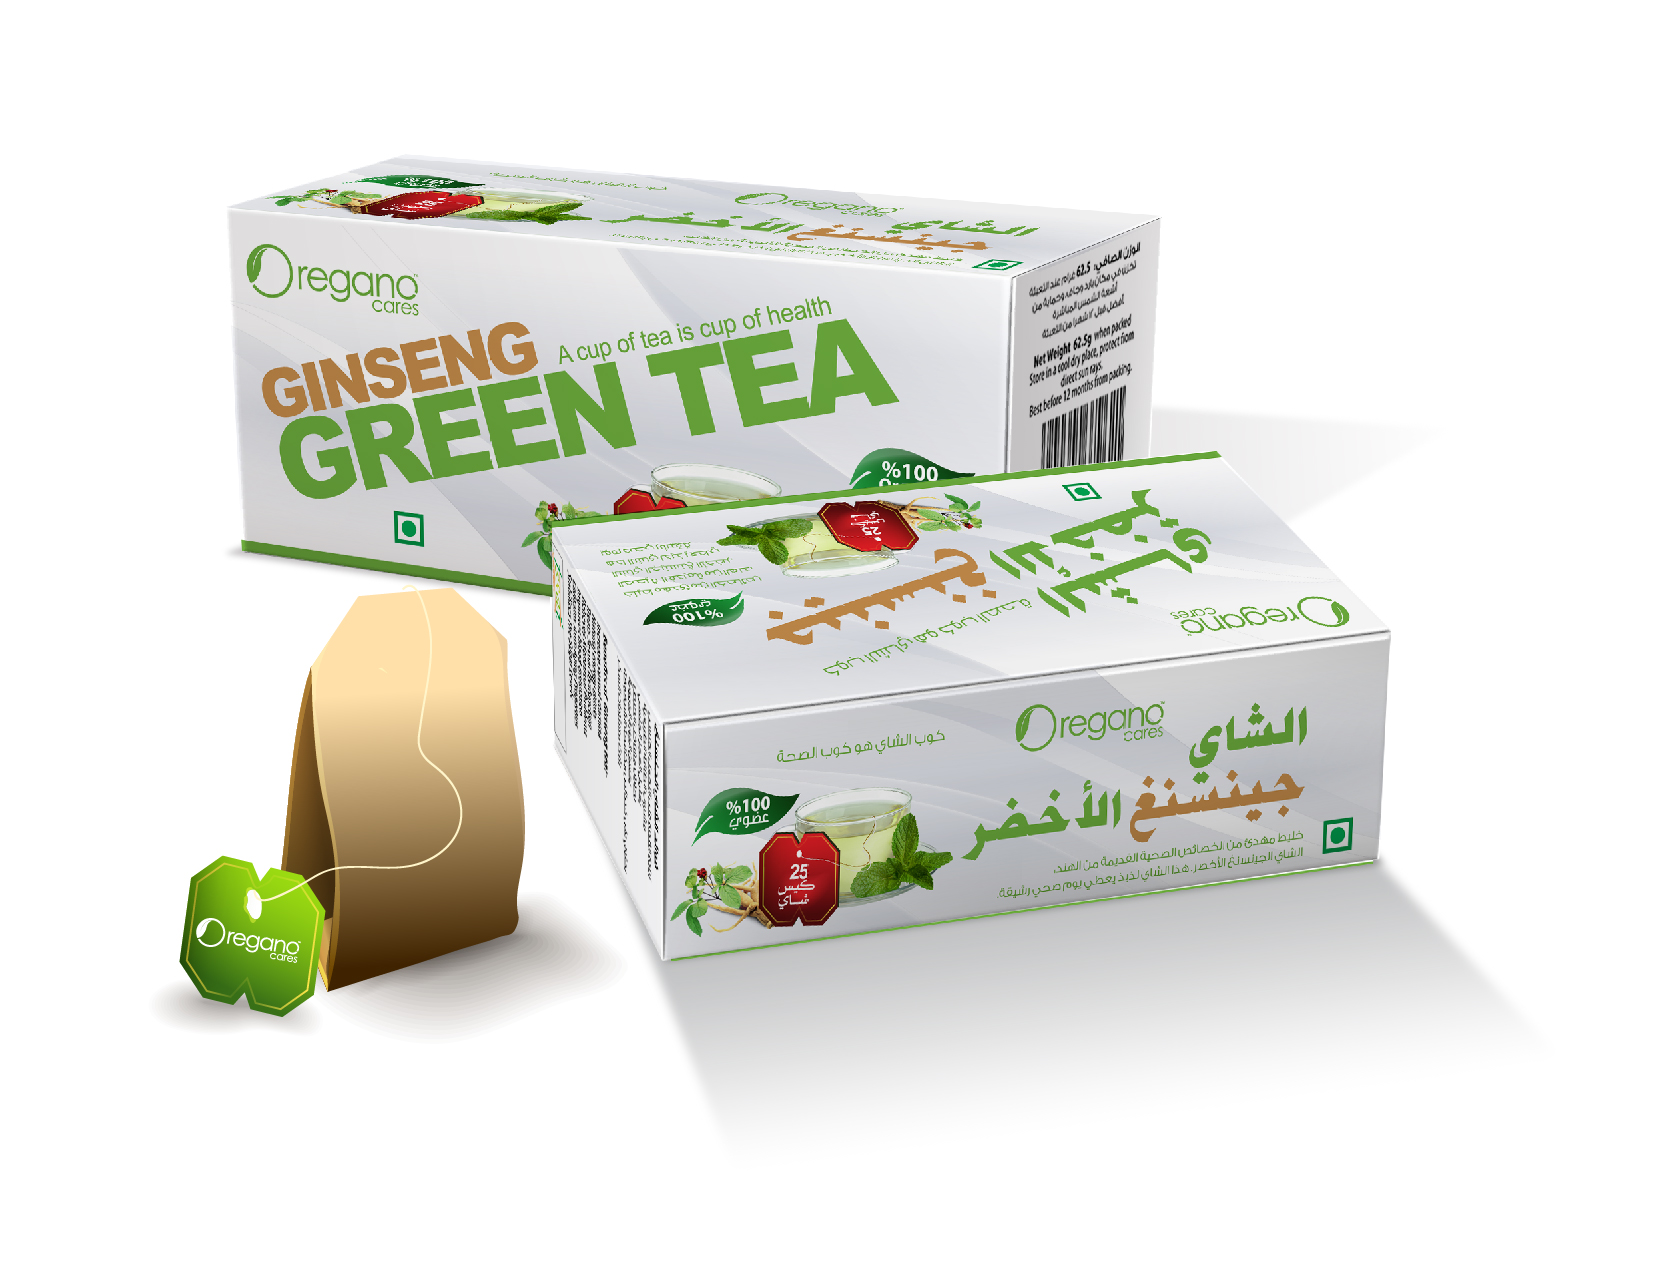 Oregano Cares Ginseng Green Tea